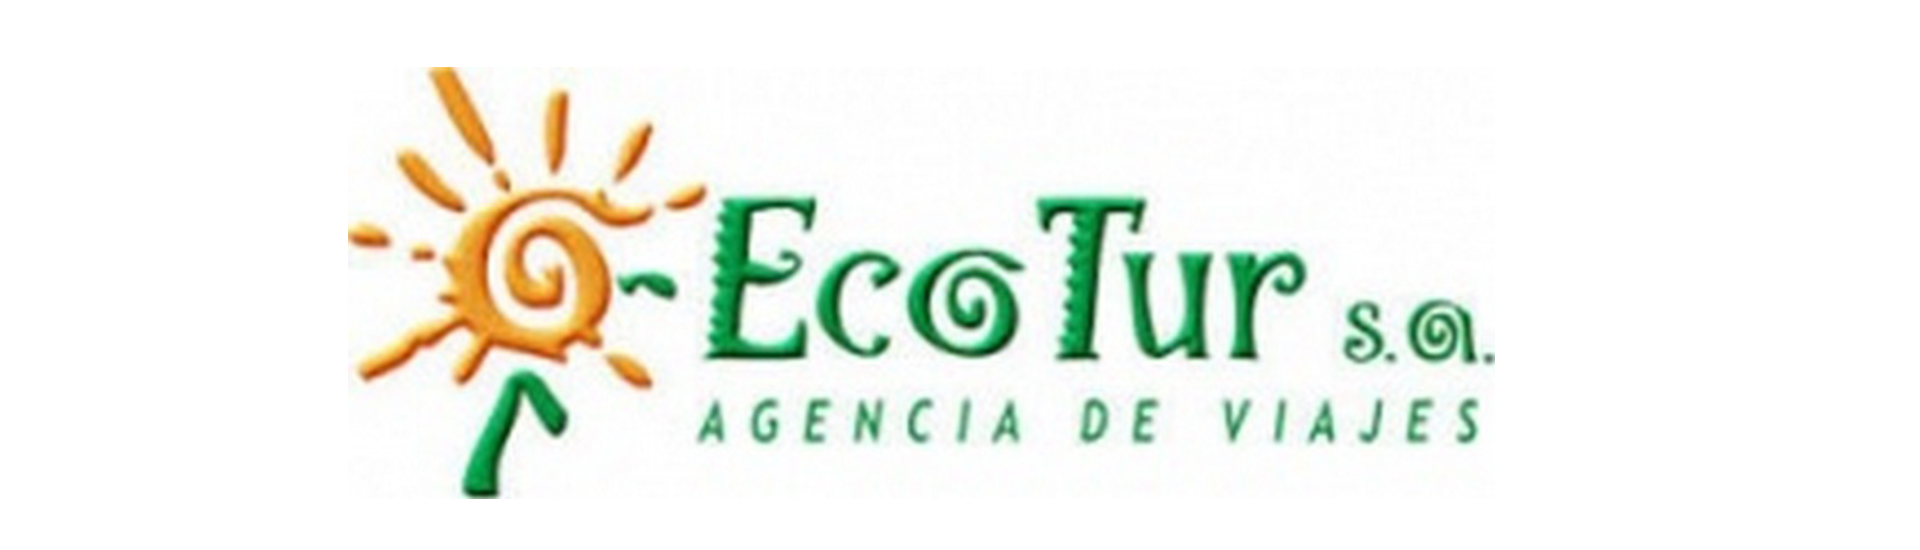 Логотип компании Ecotur Cuba